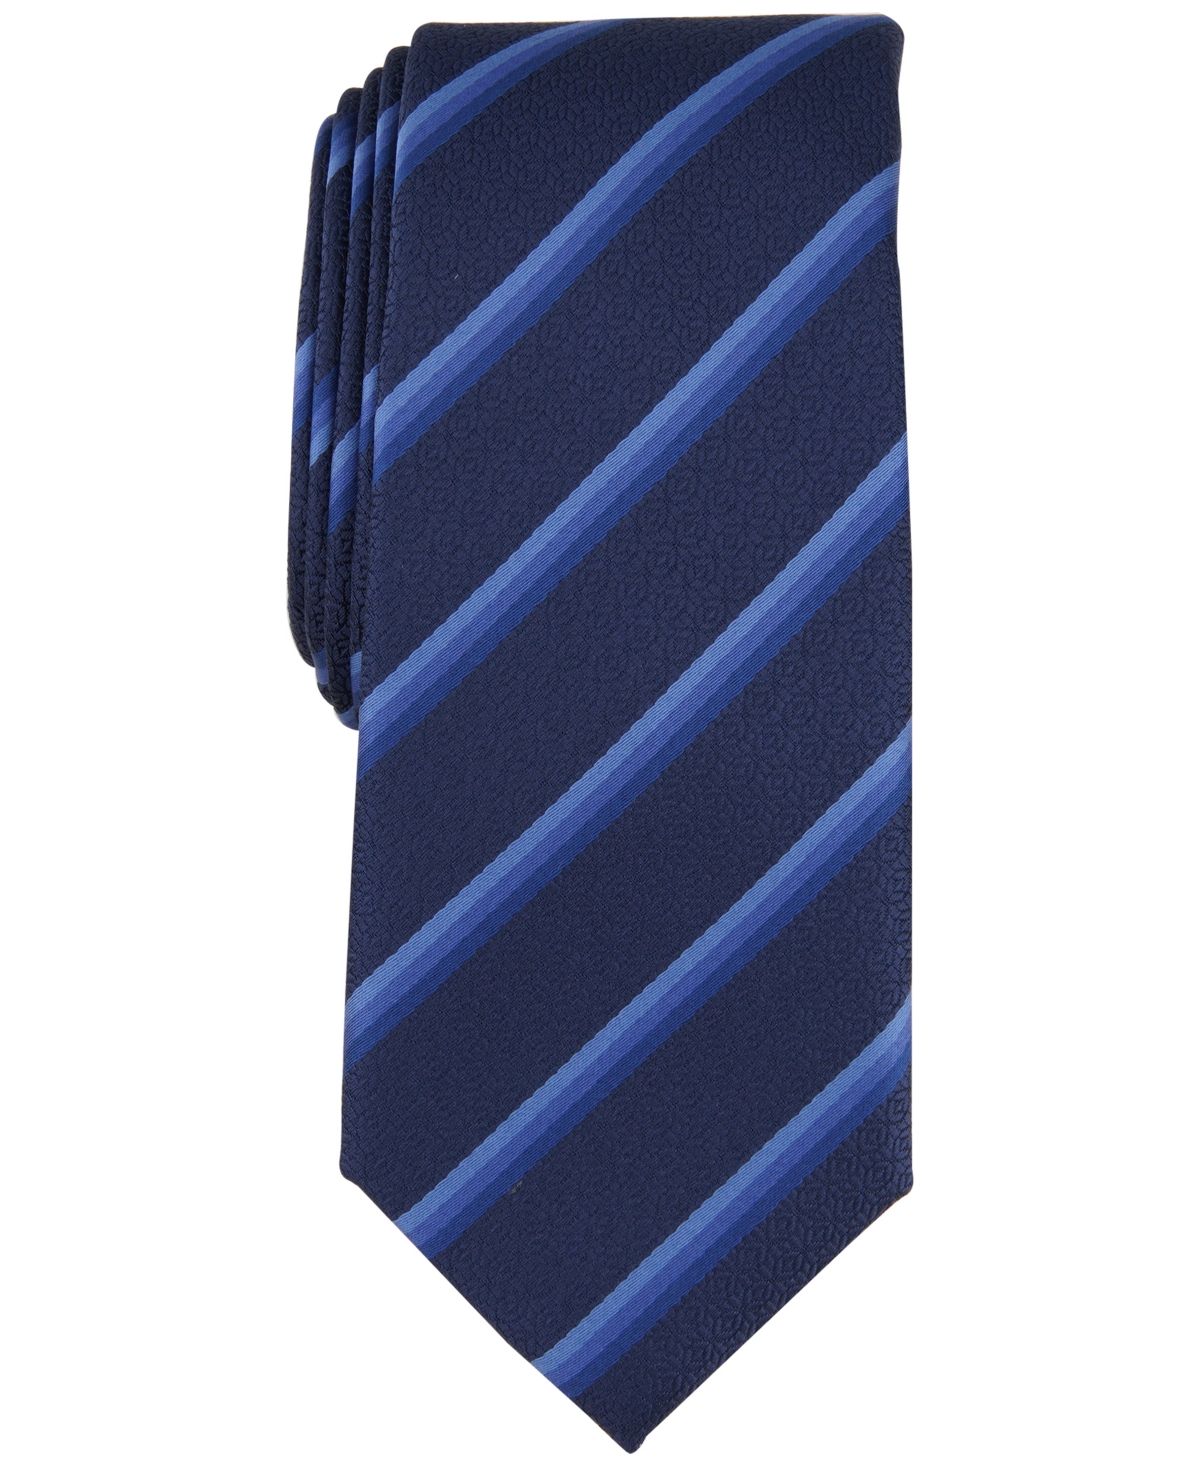 Men's Vaughn Stripe Tie, Created for Macy's - Navy